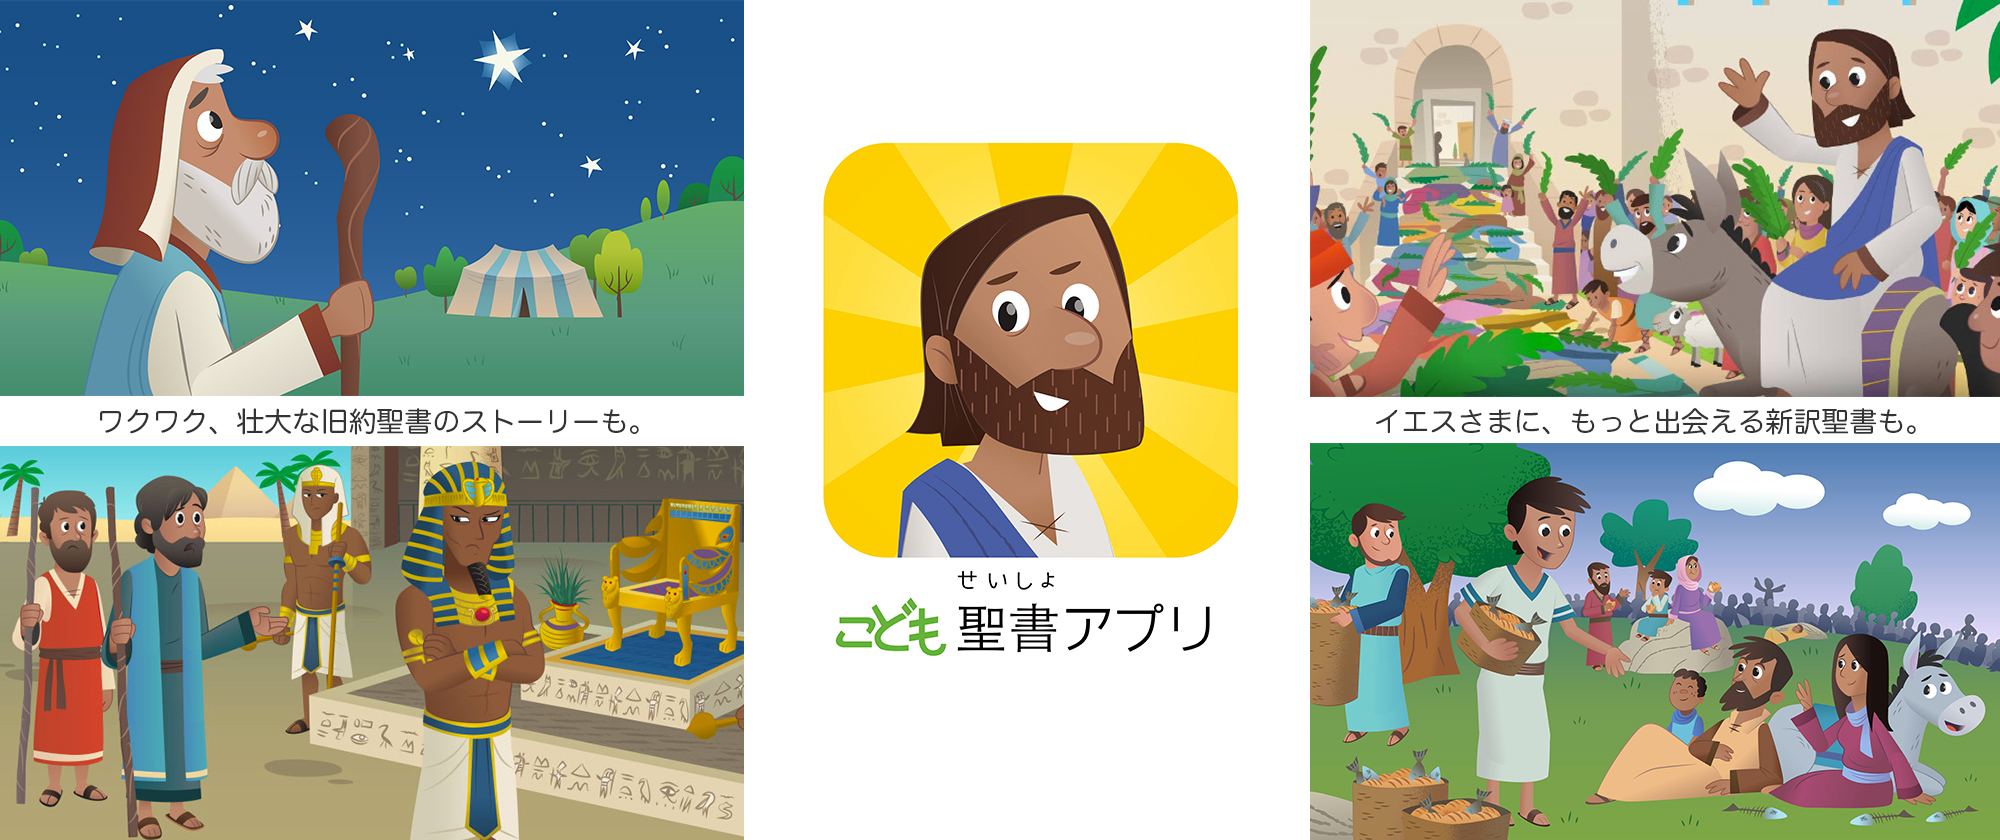 こども聖書アプリ - OneHope Japan Official Website